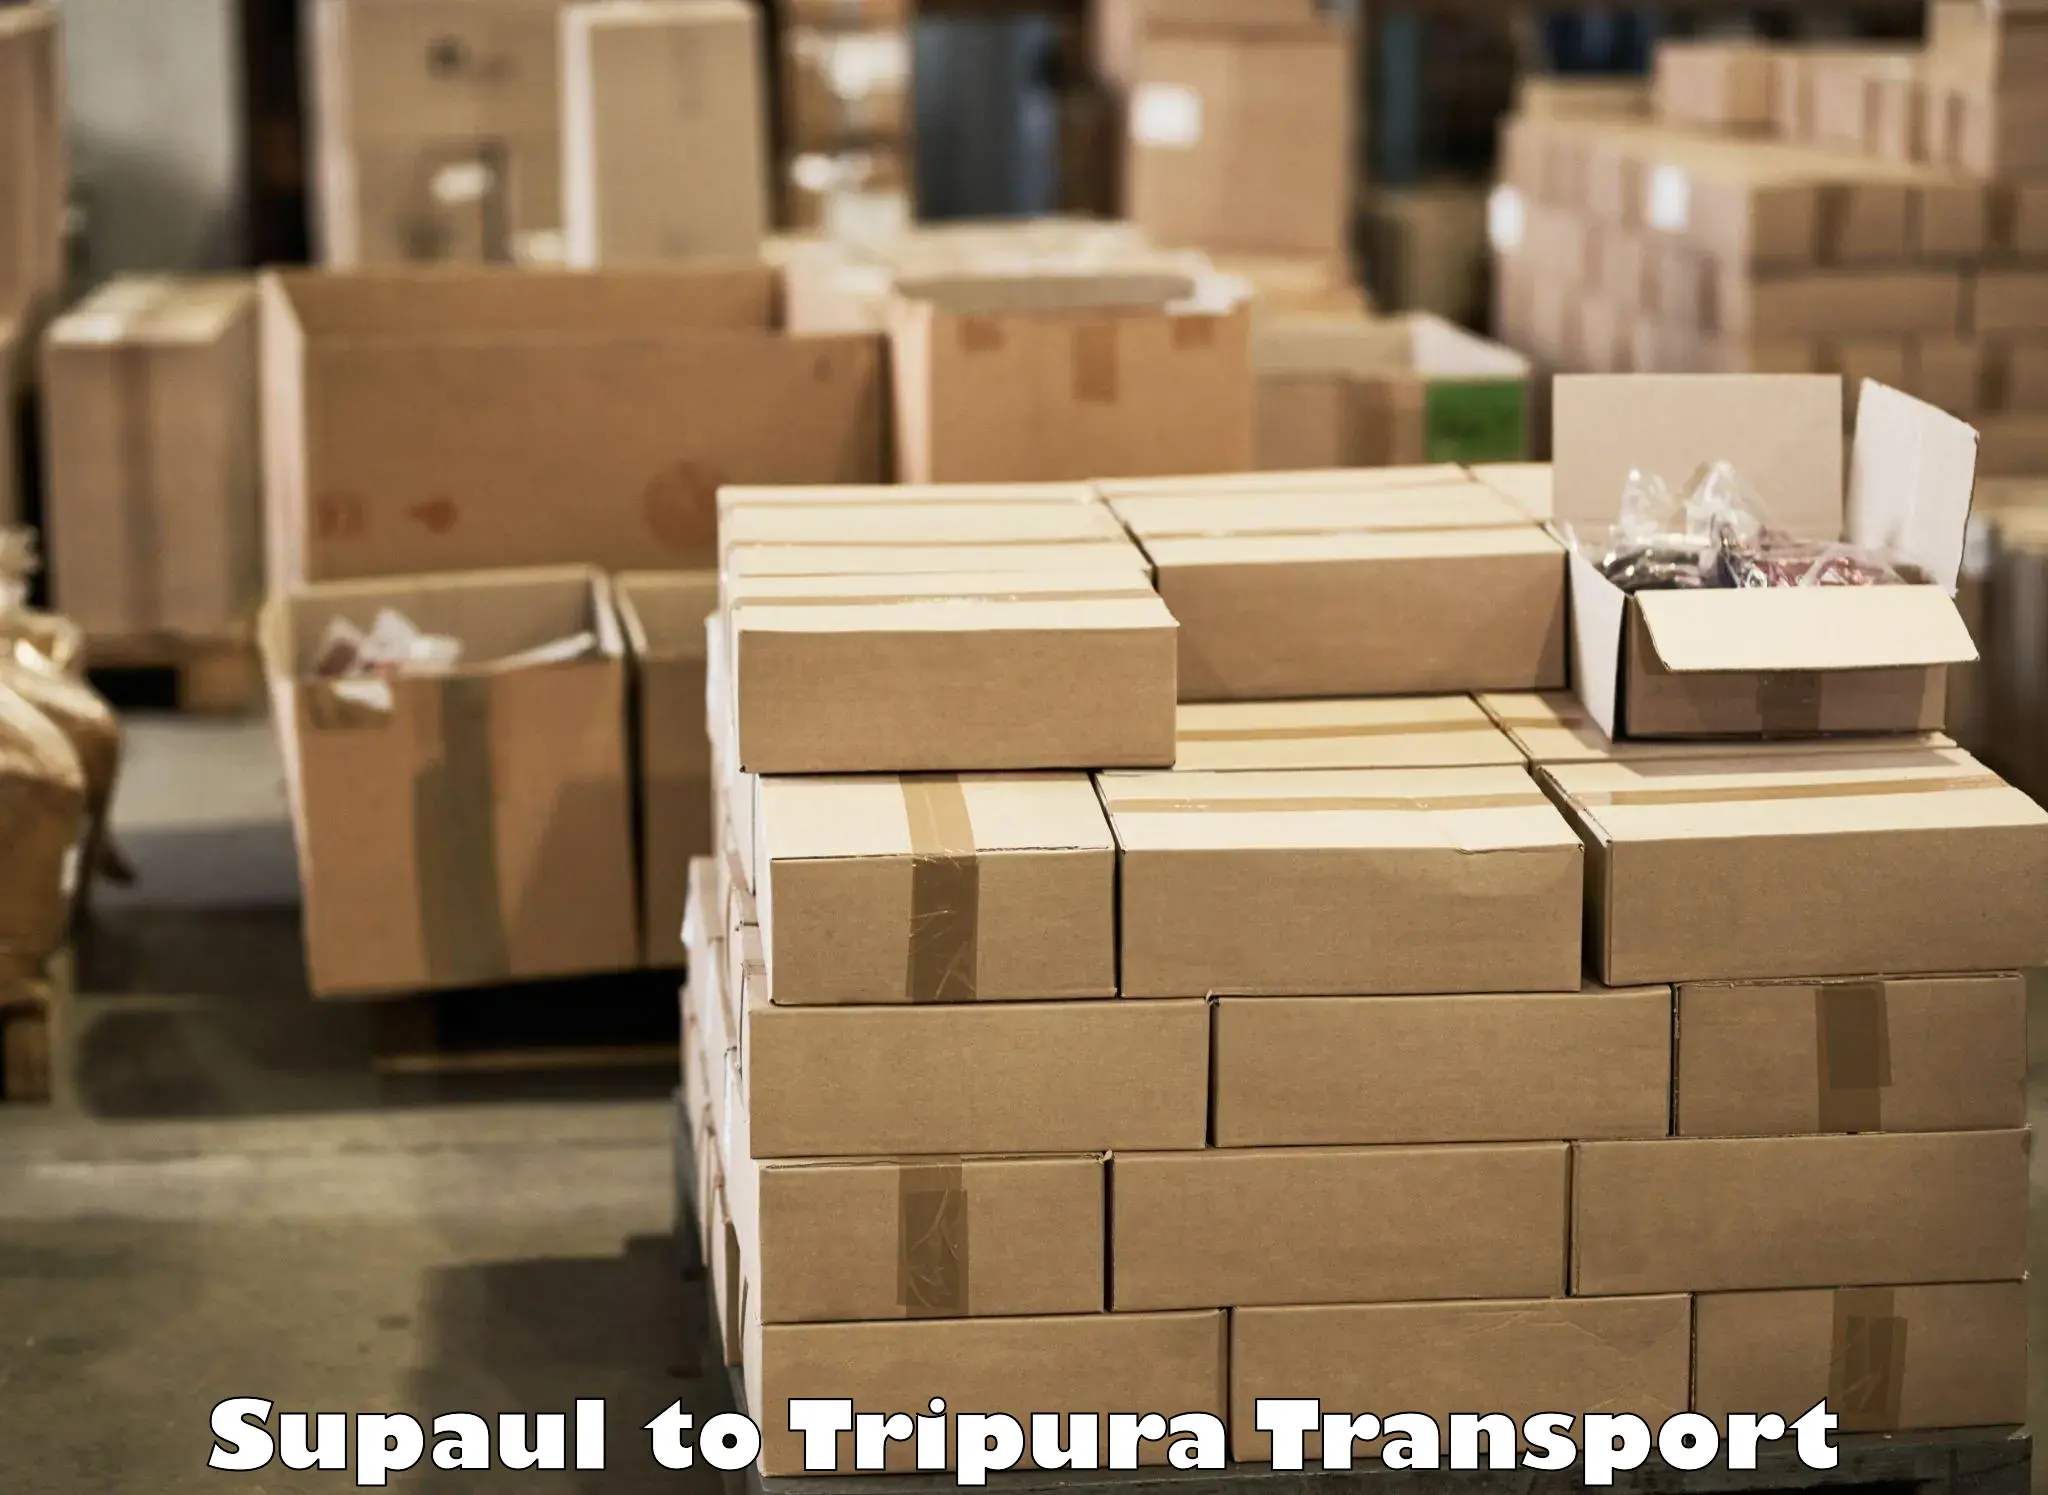 Nearby transport service Supaul to IIIT Agartala